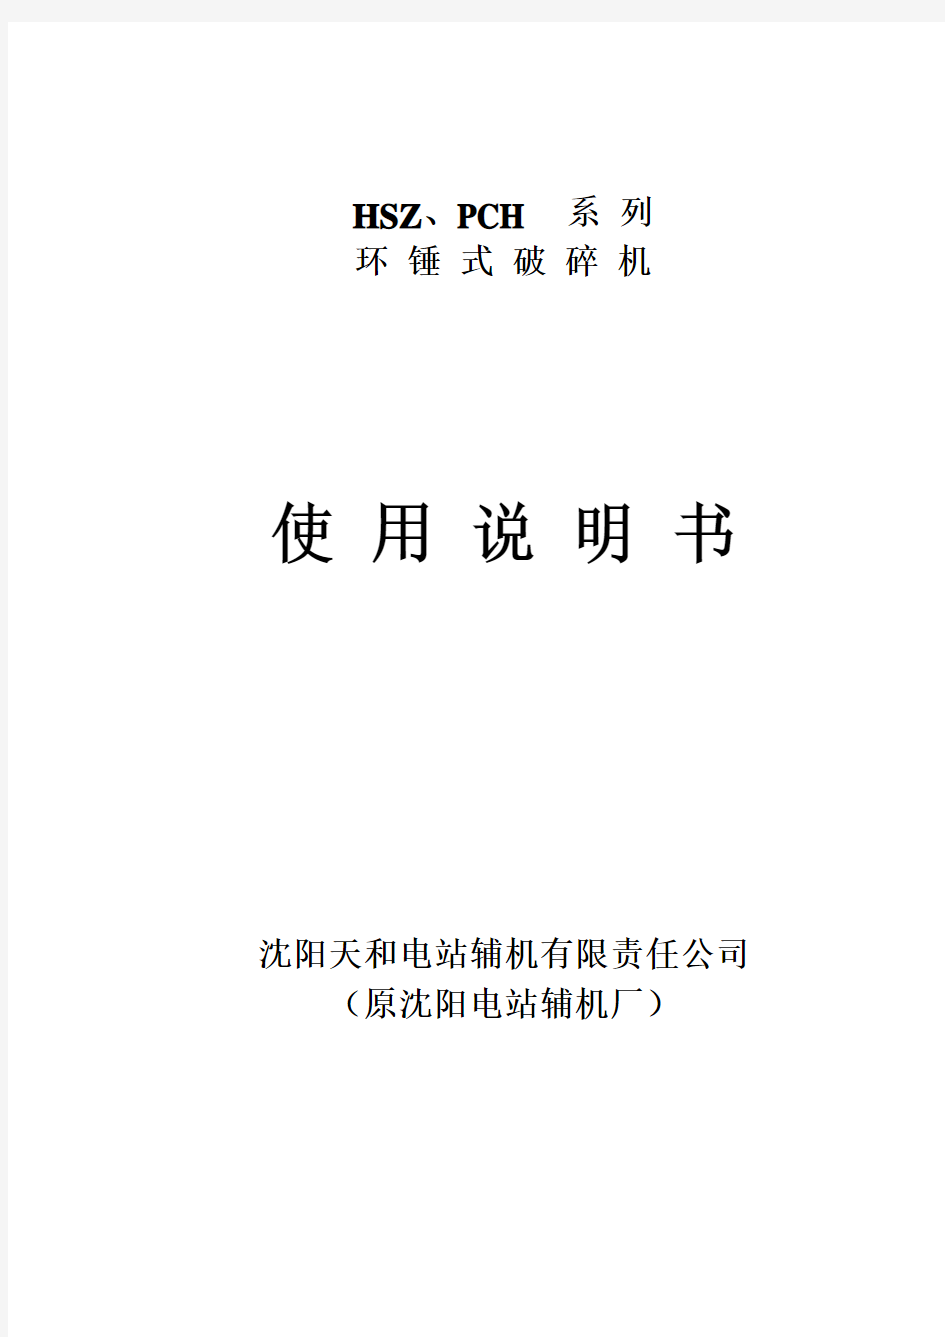 HSZ、PCH系列环式破碎机说明书